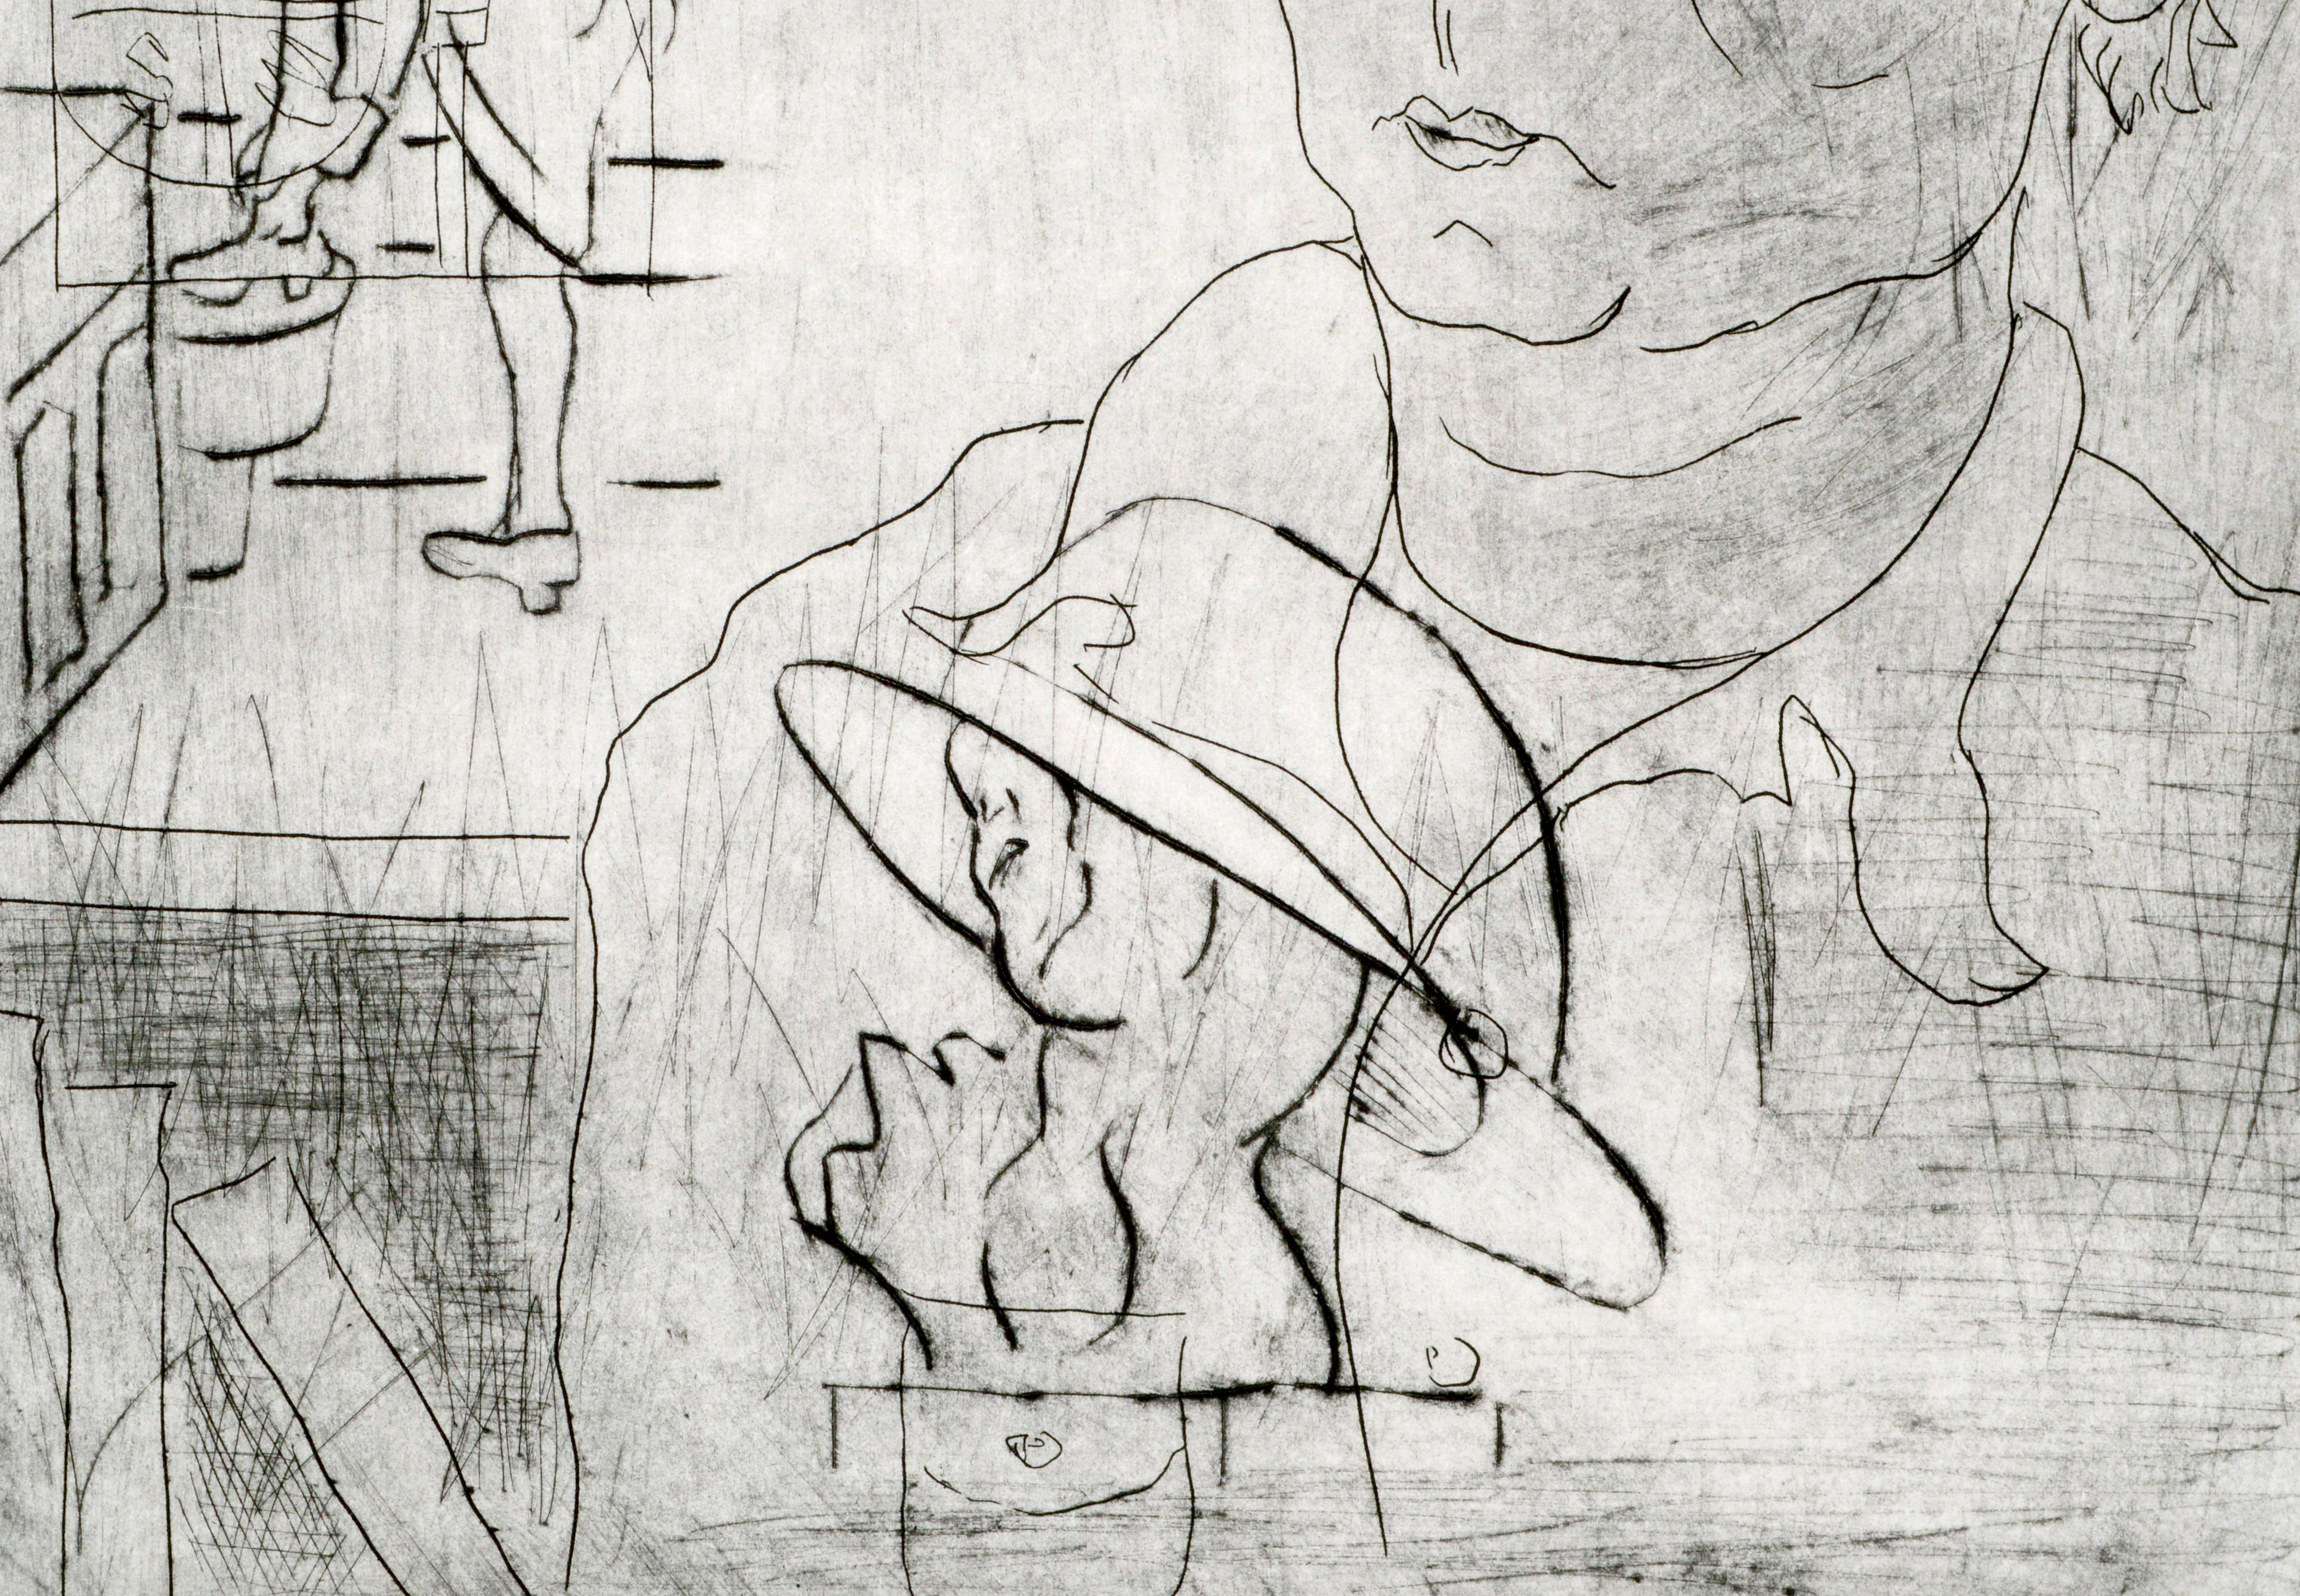 Kräftige Lithografie, die ein abstrahiertes Self-Portrait mit anderen figurativen Elementen darstellt, die die Vergangenheit des Künstlers symbolisieren, von dem kalifornischen Künstler I. Colon (20. Jahrhundert). Nummeriert, betitelt und signiert